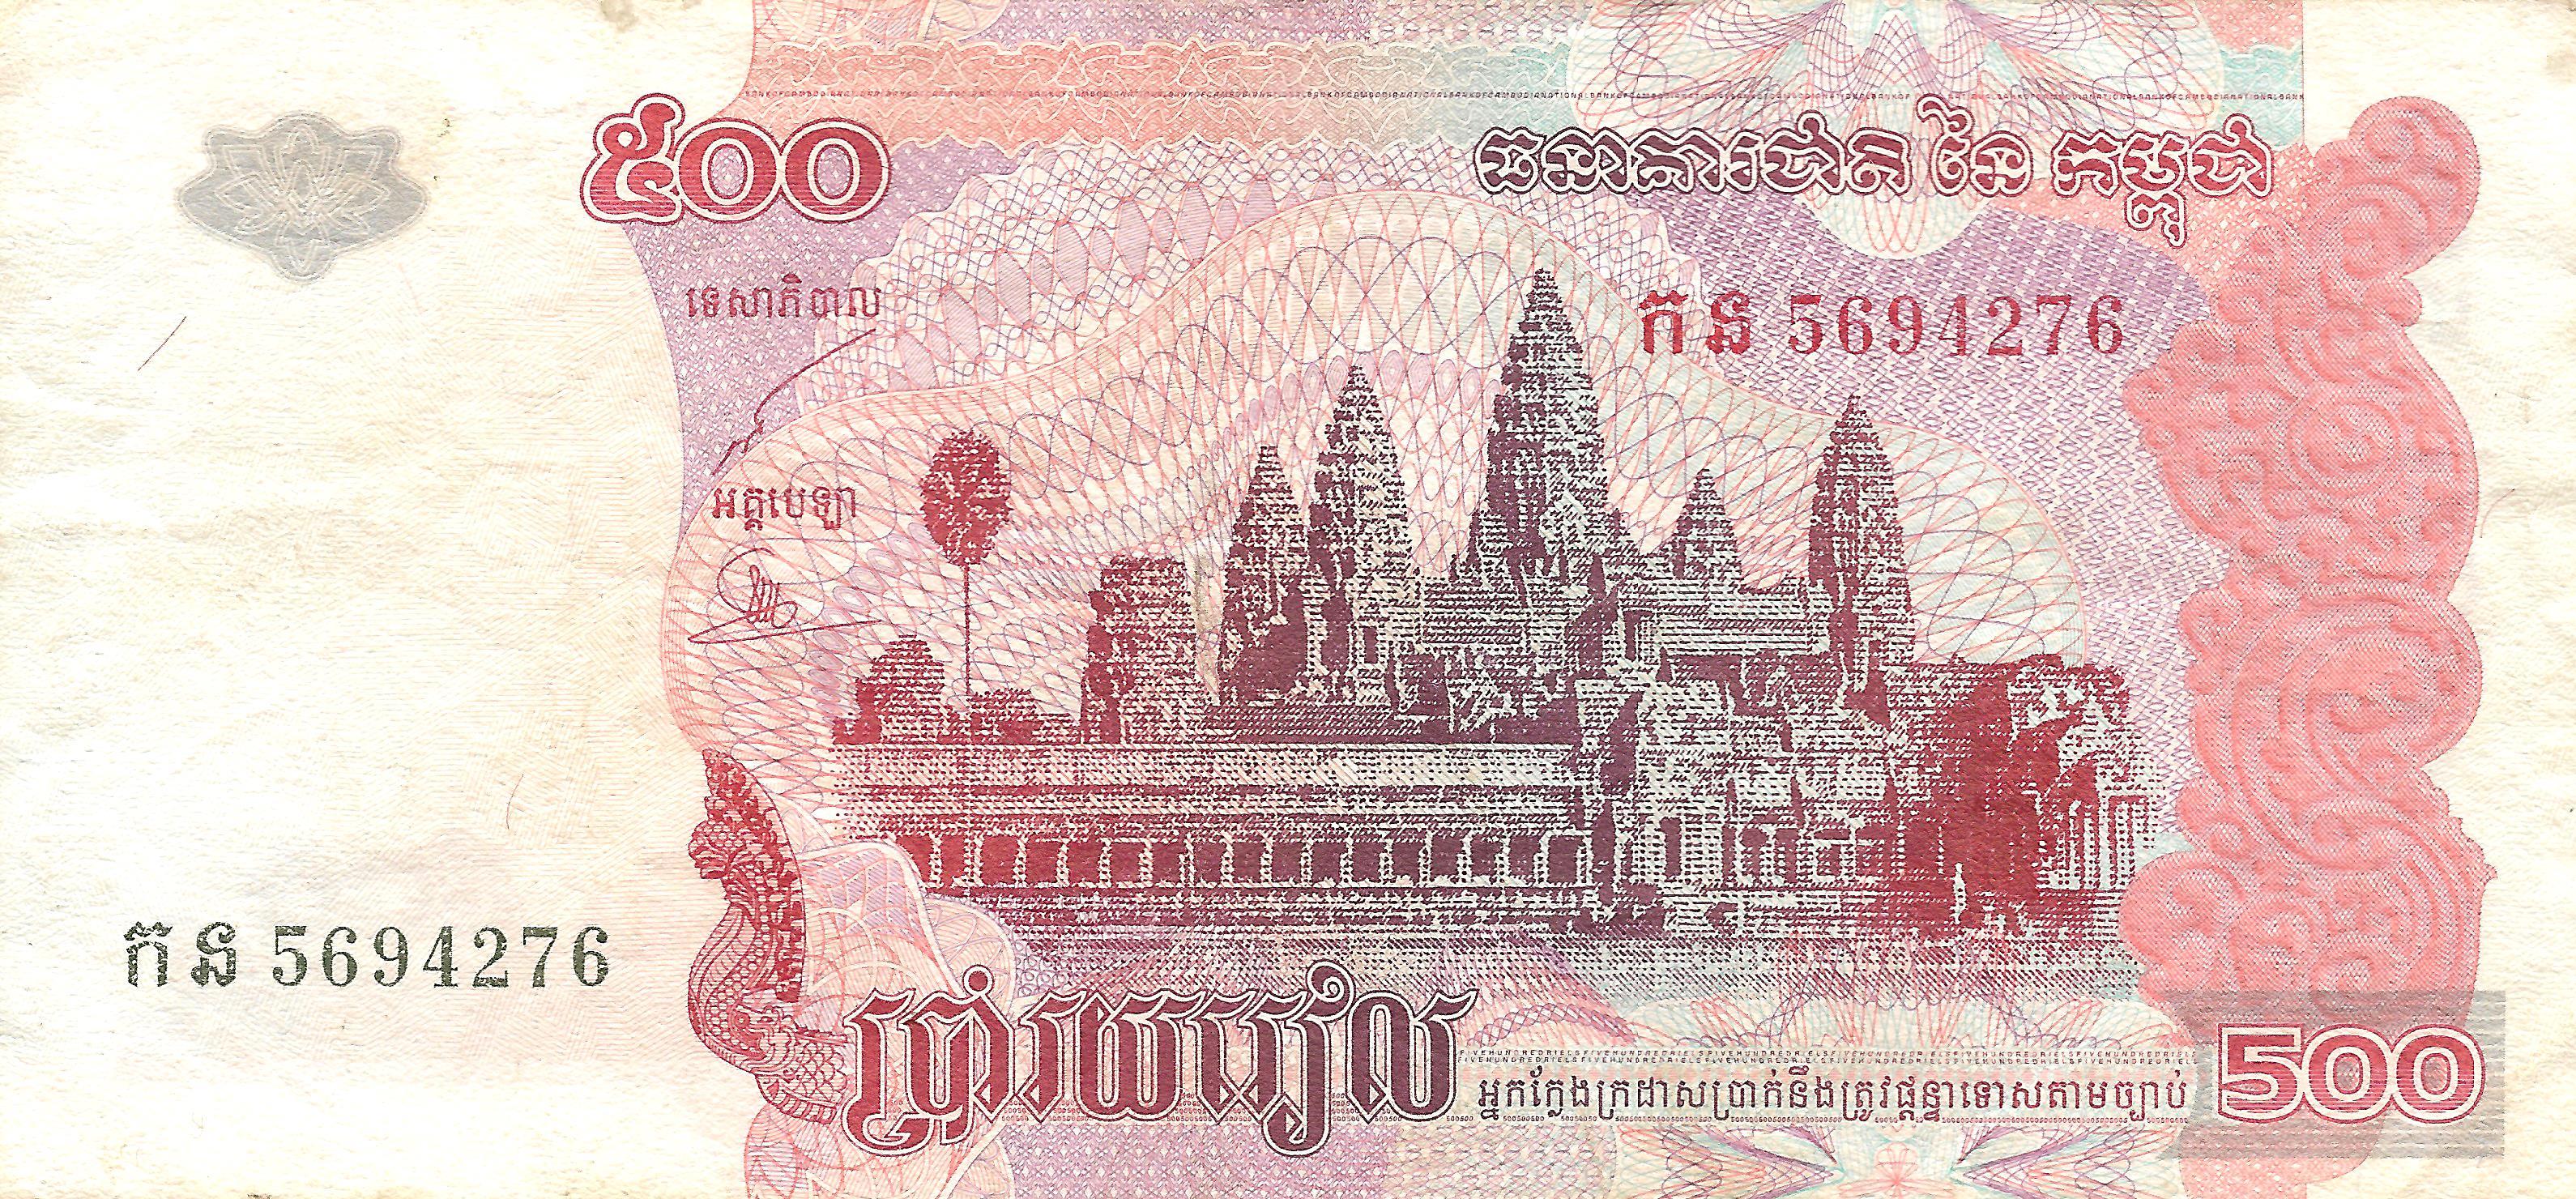 Riel Campuchia - Wikipedia tiếng Việt: Riel là đơn vị tiền tệ chính thức của Campuchia. Nếu muốn tìm hiểu thêm về loại tiền này, hãy ghé thăm trang Wikipedia tiếng Việt. Tại đây, bạn có thể đọc thông tin chi tiết và tìm hiểu sự phát triển của Riel Campuchia.